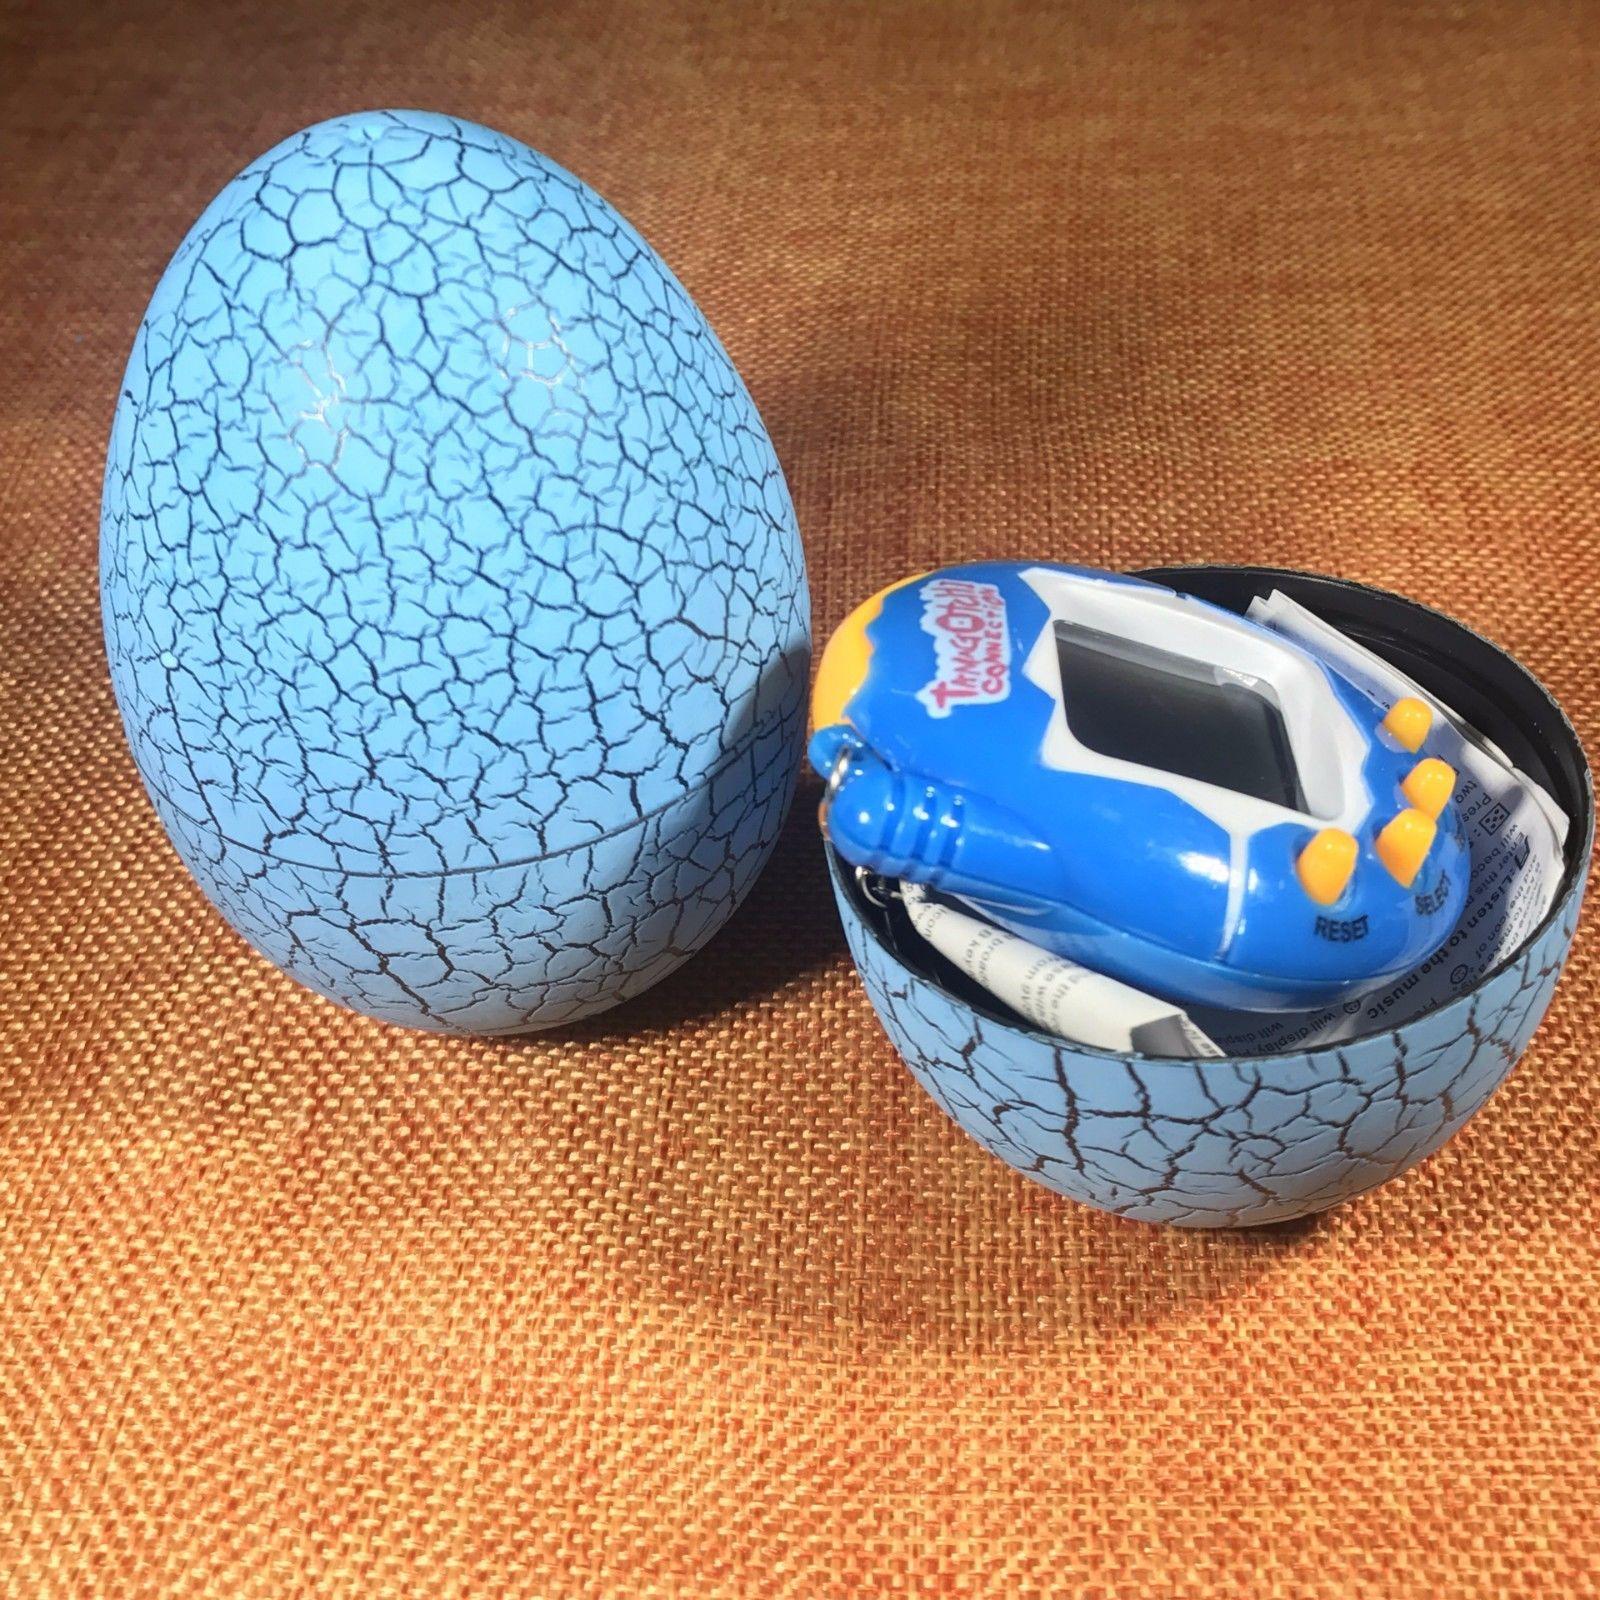 Фото 3 Игрушка электронный питомец Тамагочи в Яйце Динозавра UFT Eggshell Game Blue